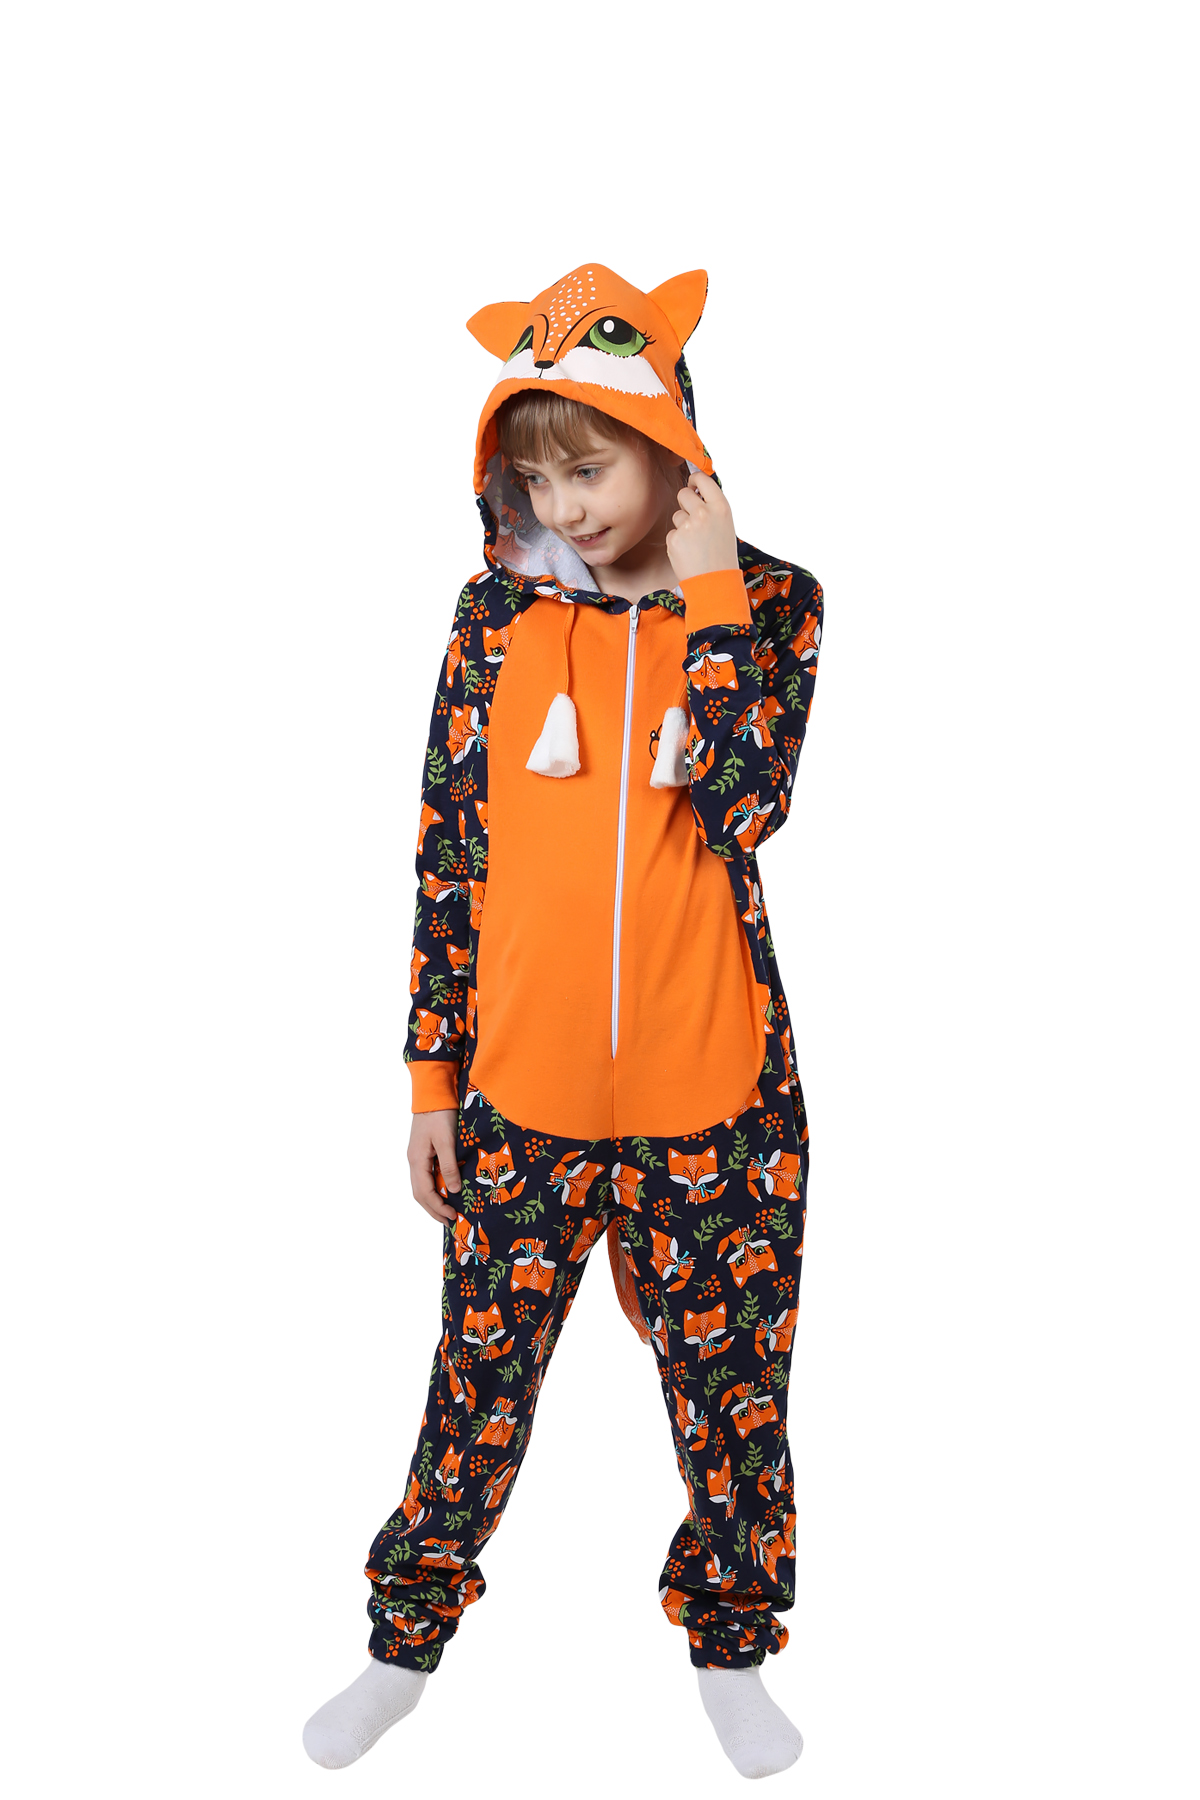 Детская пижама-кигуруми Лиса Цвет: Оранжевый (8-9 лет), размер 8-9 лет otj636468 Детская пижама-кигуруми Лиса Цвет: Оранжевый (8-9 лет) - фото 1